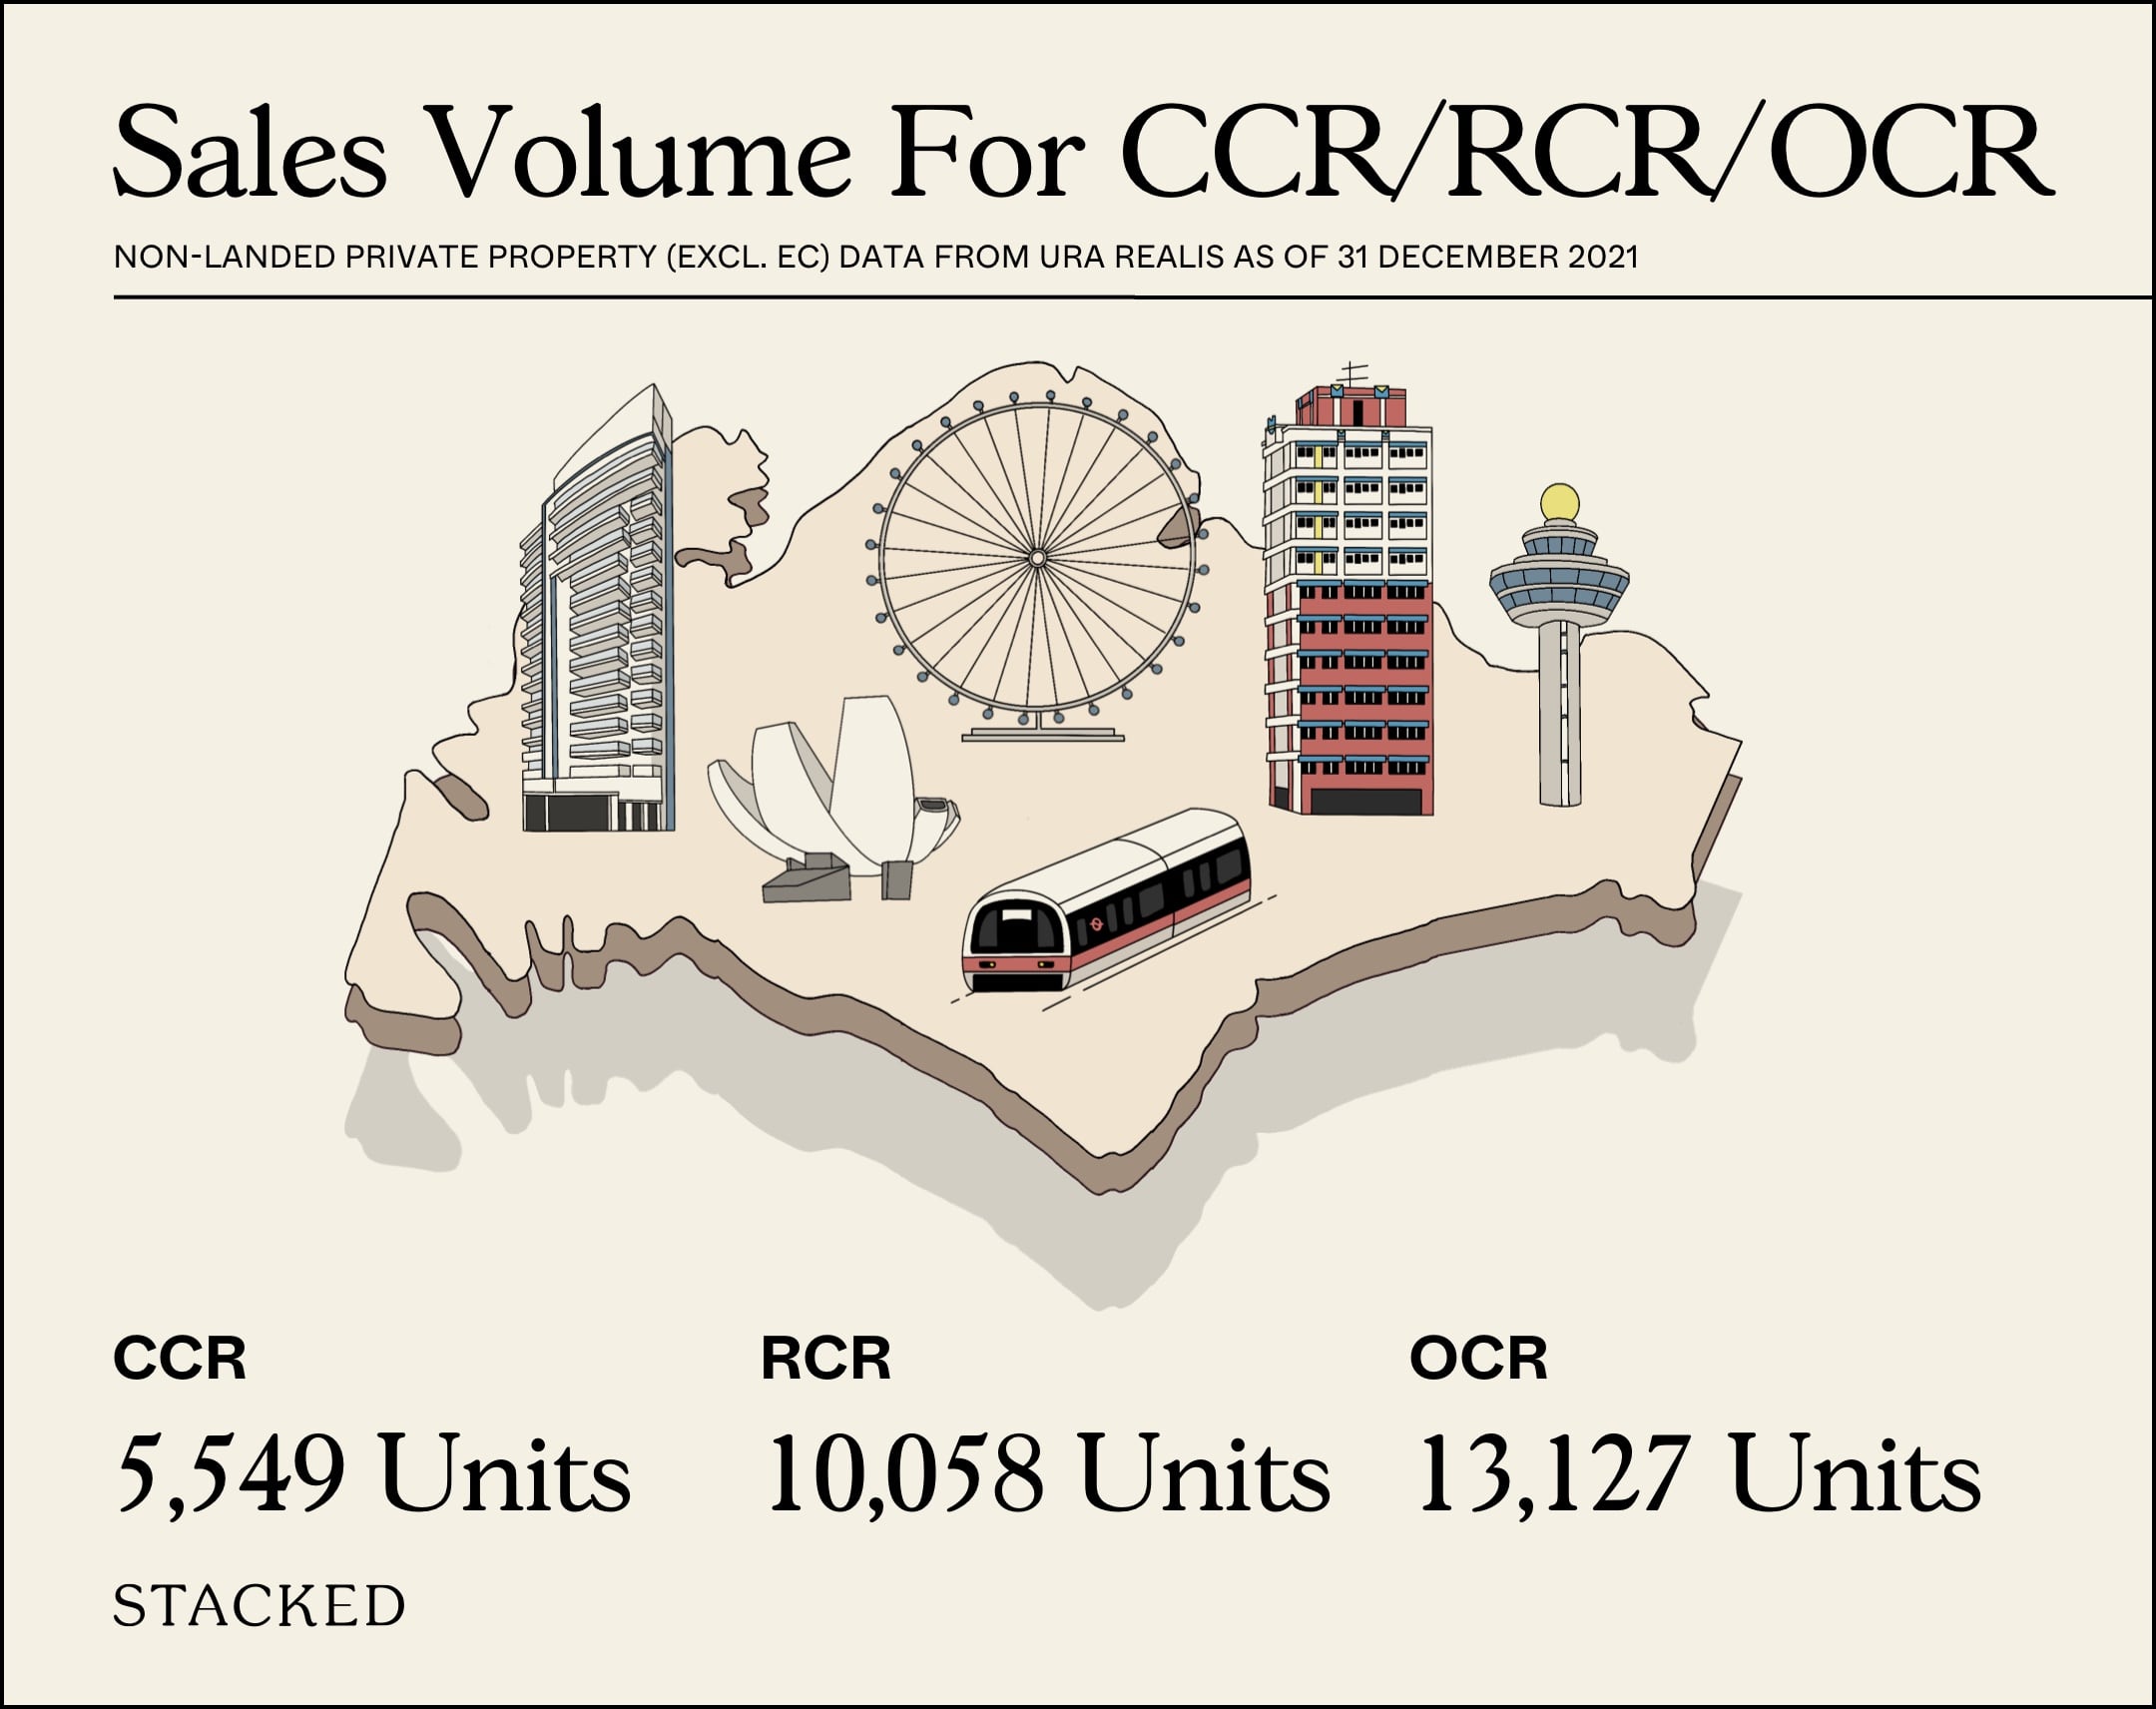 Sales Volume For CCR RCR OCR 2021